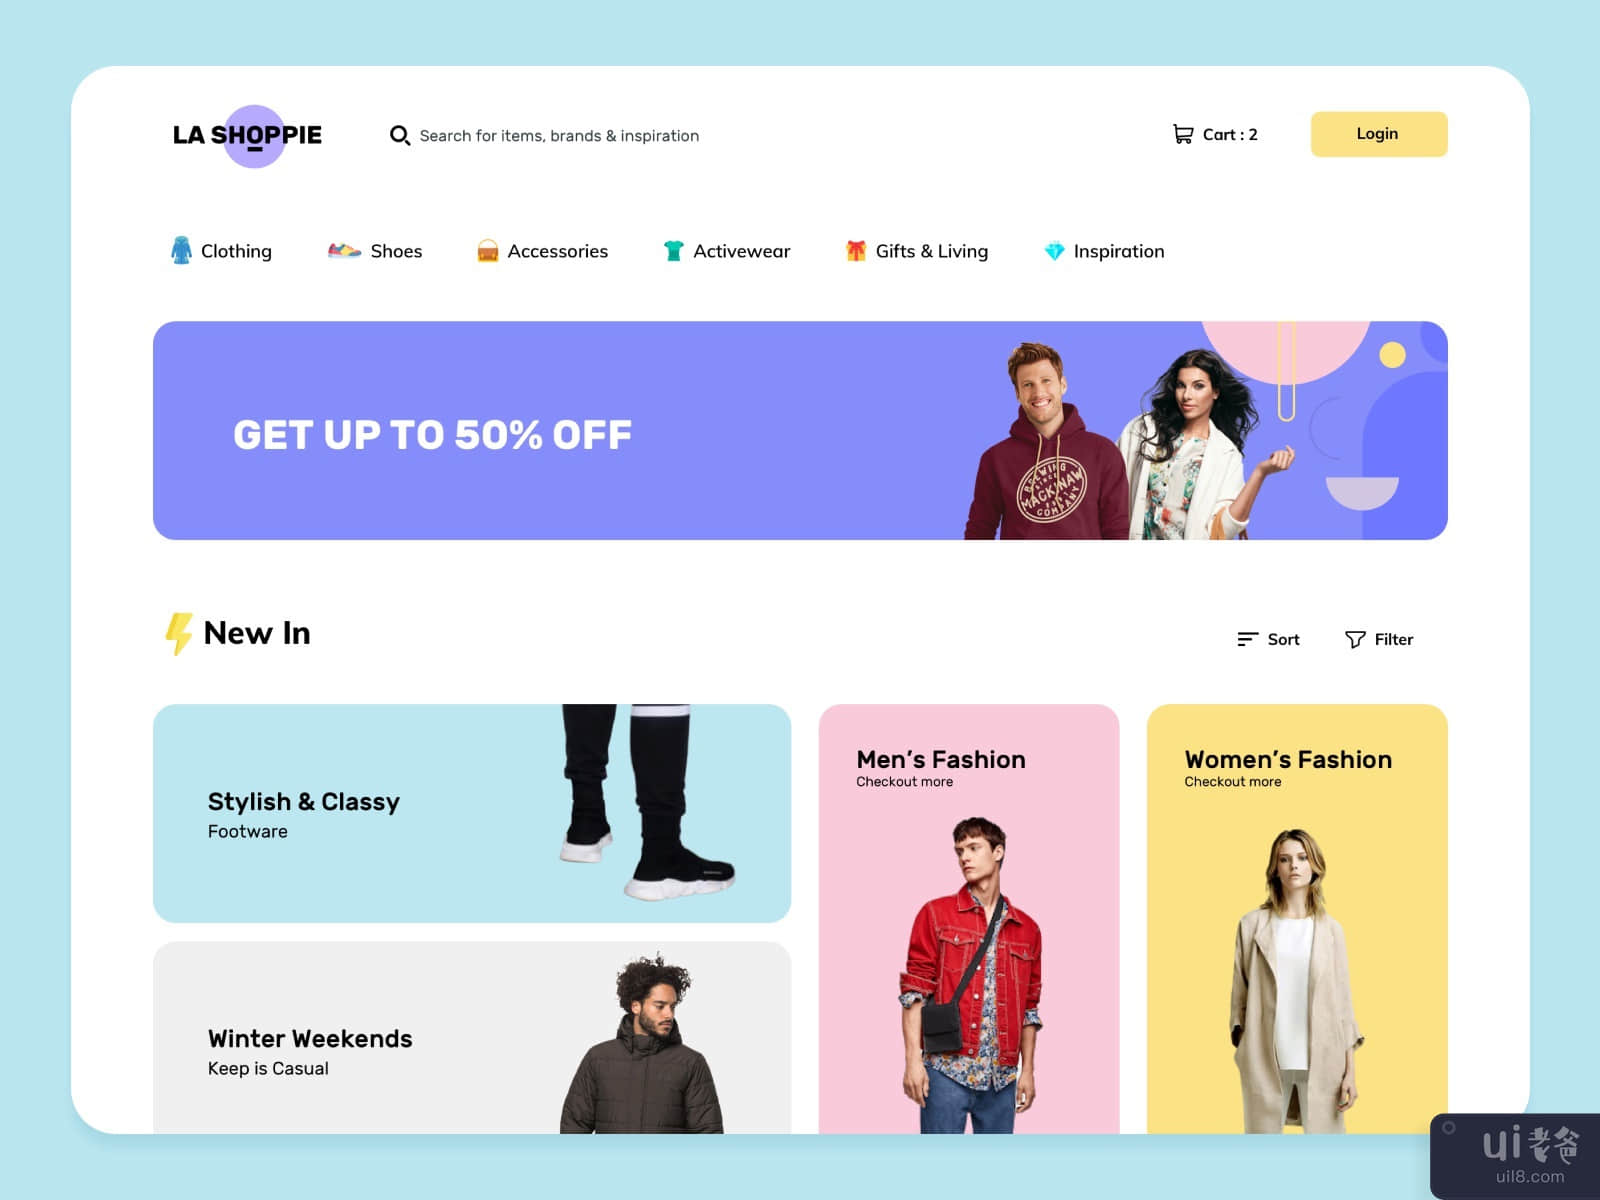 Clothing eCommerce Shop Webpage